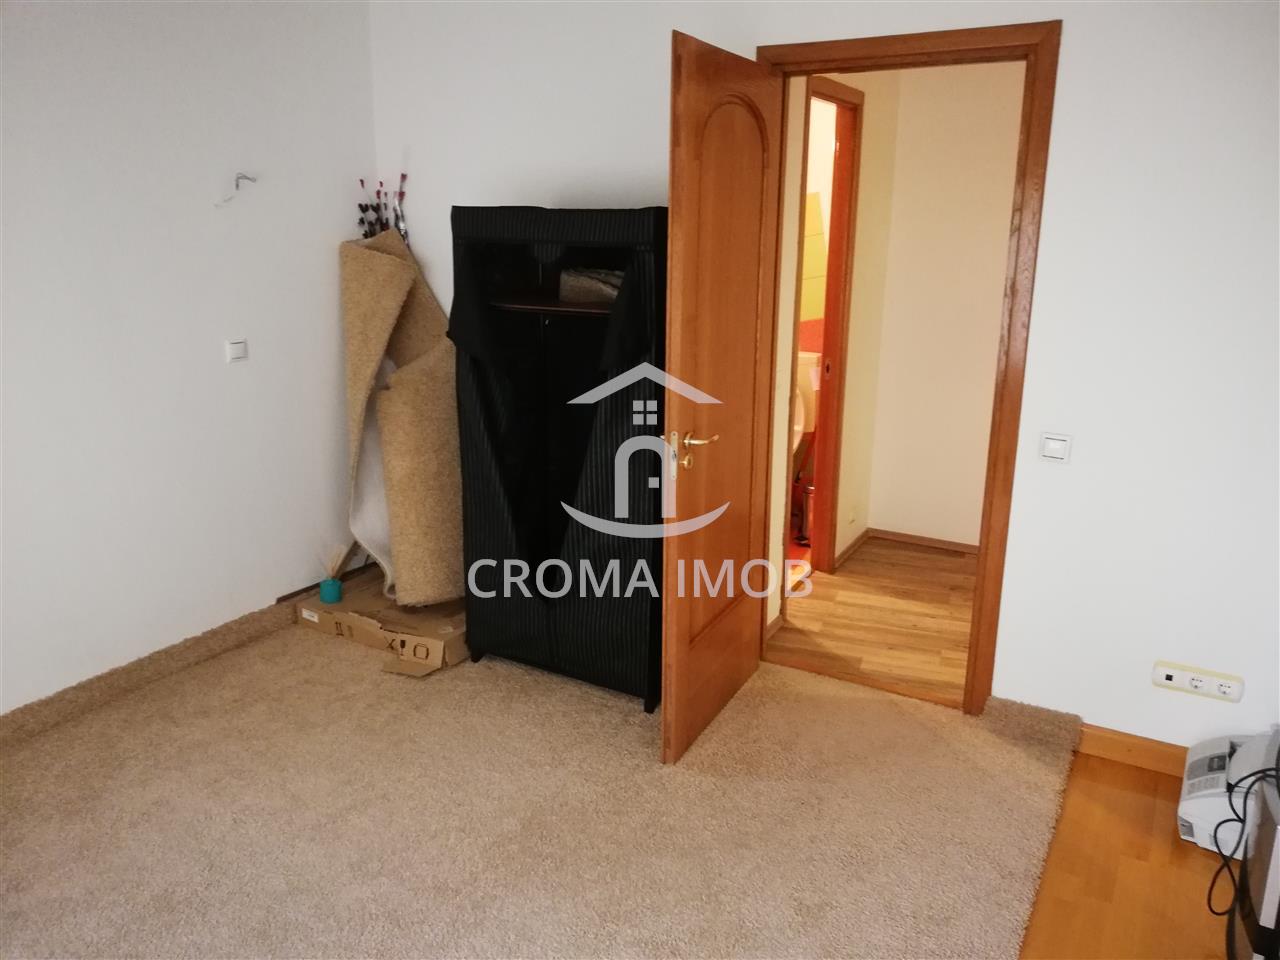 CromaImob - Inchiriere apartament 3 camere in Ploiesti, zona Gh. Doja